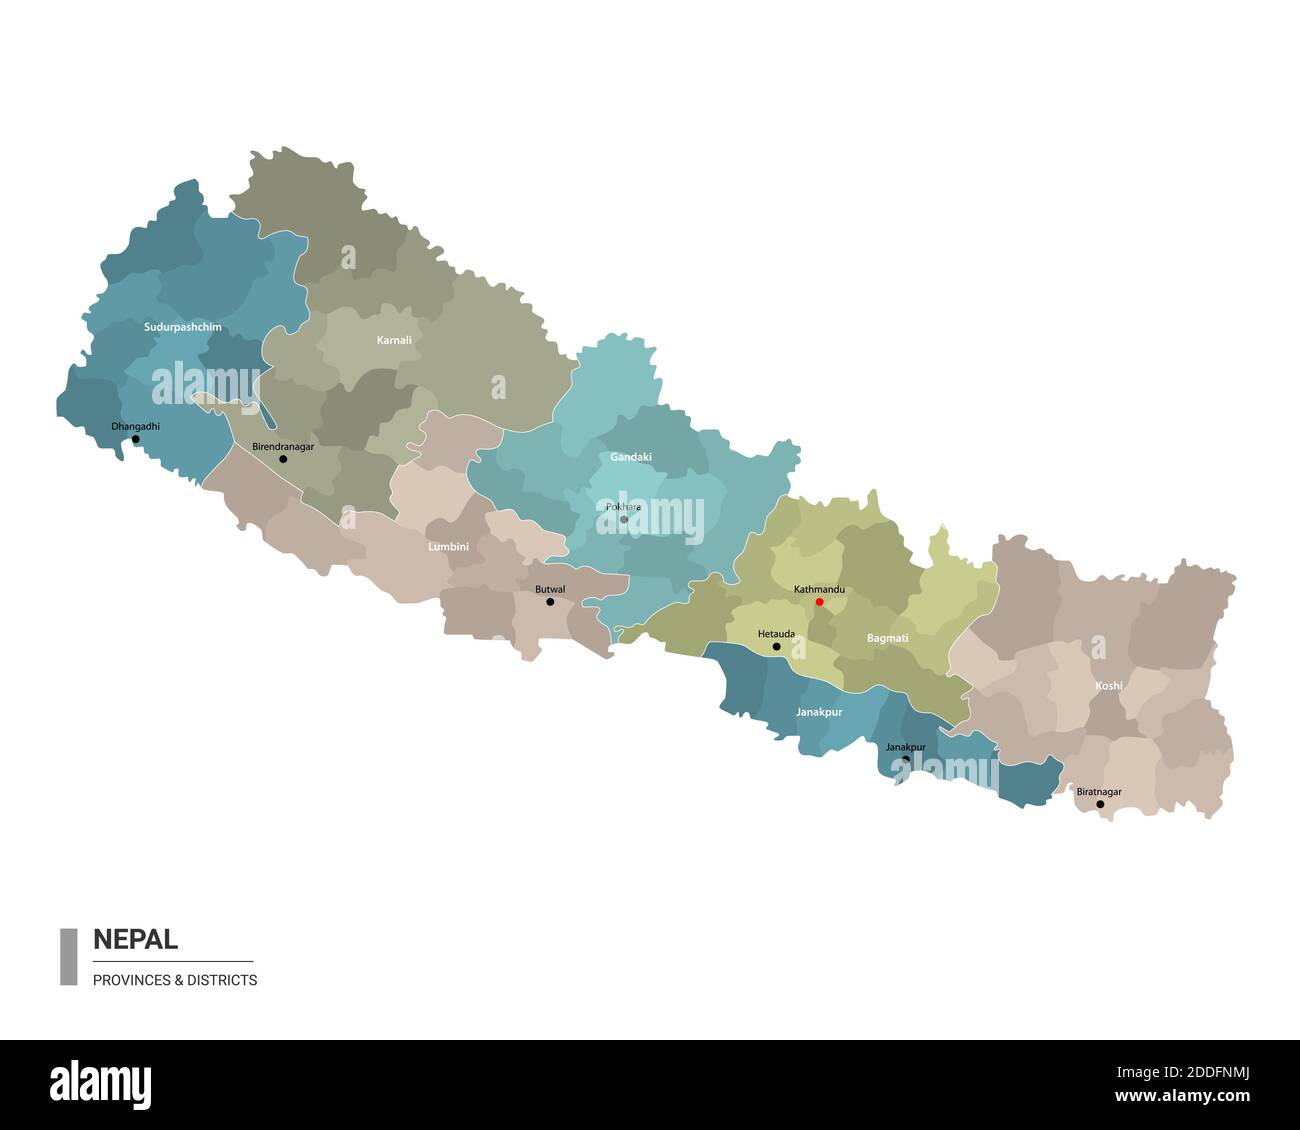 Népal higt carte détaillée avec subdivisions. Carte administrative du Népal avec le nom des districts et des villes, colorée par les États et les districts administratifs. Illustration de Vecteur